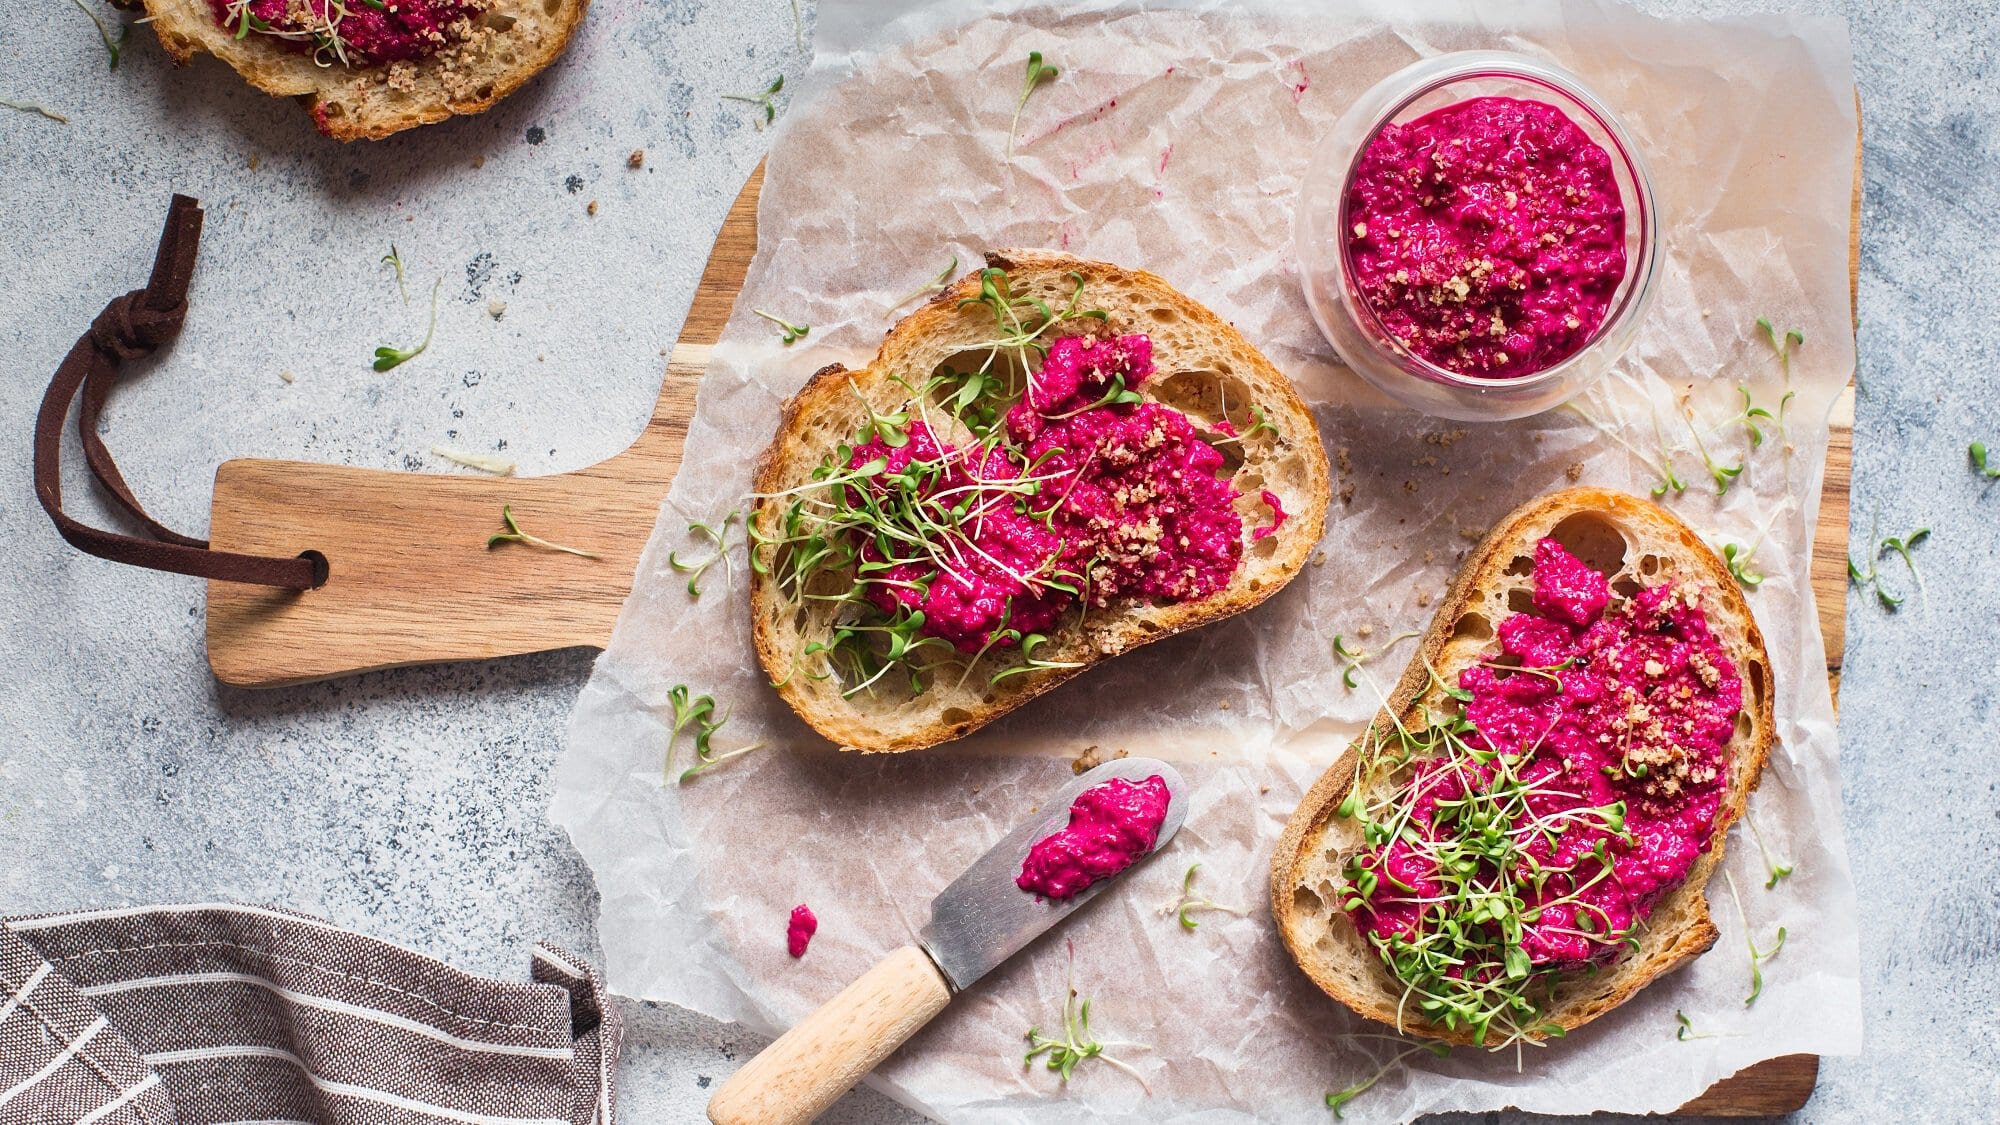 Brote mit Pink Hummus und Kresse auf einem Brett, daneben ein Glas Hummus und ein Messer, alles Draufsicht.